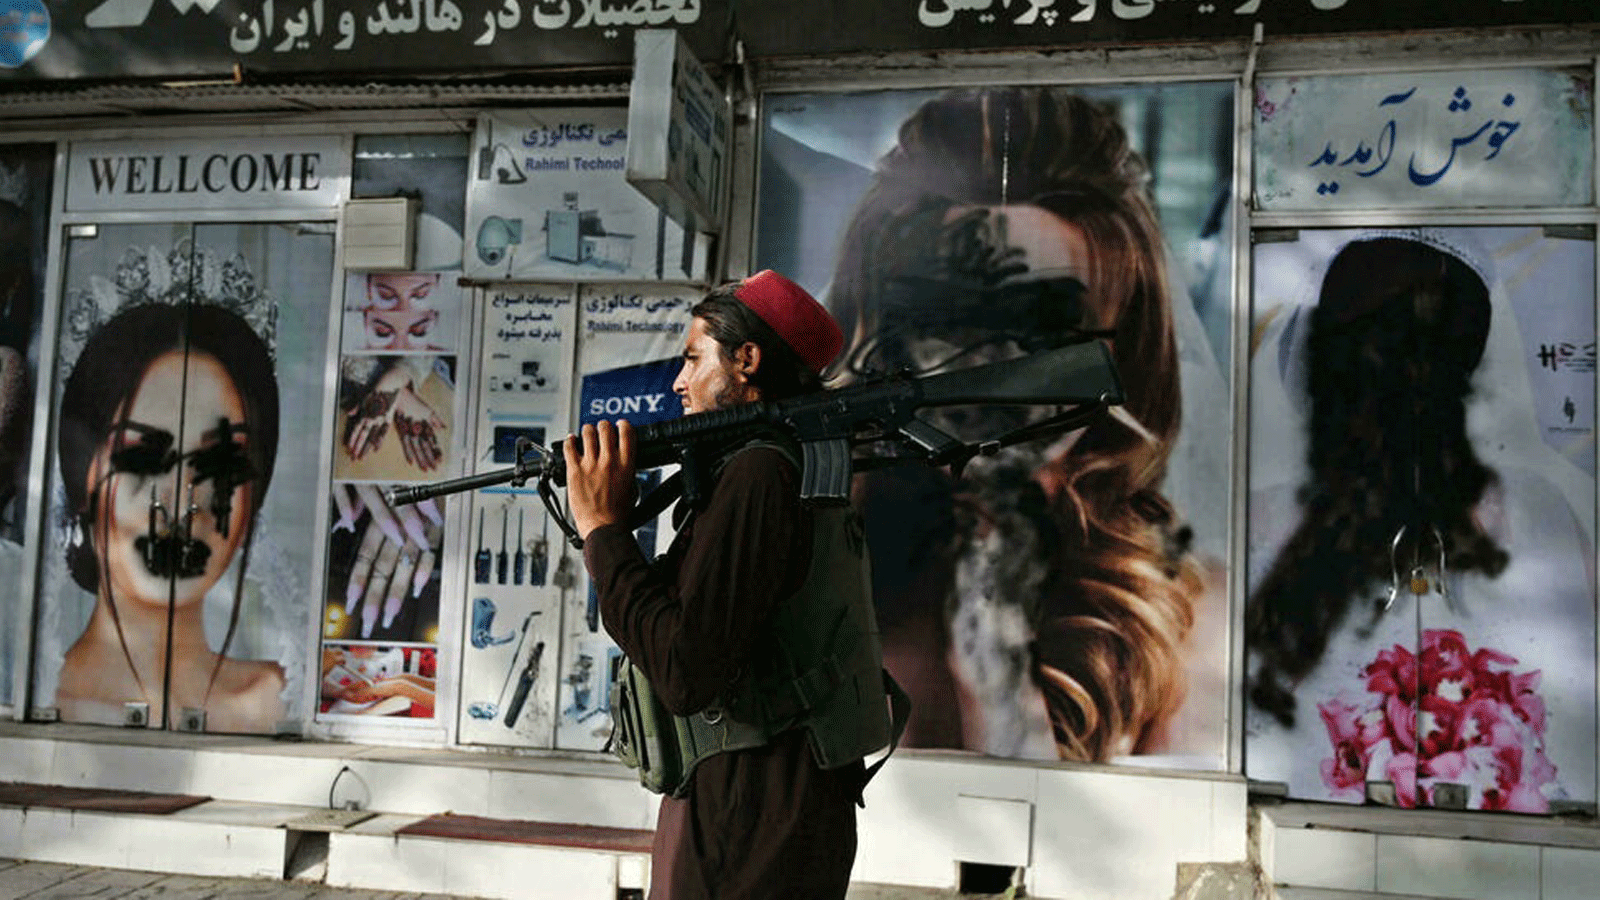  تشويه صور للنساء على واجهة صالون تجميل من خلال الرش بالطلاء في شار إي ناو في كابول/ أفغانستان